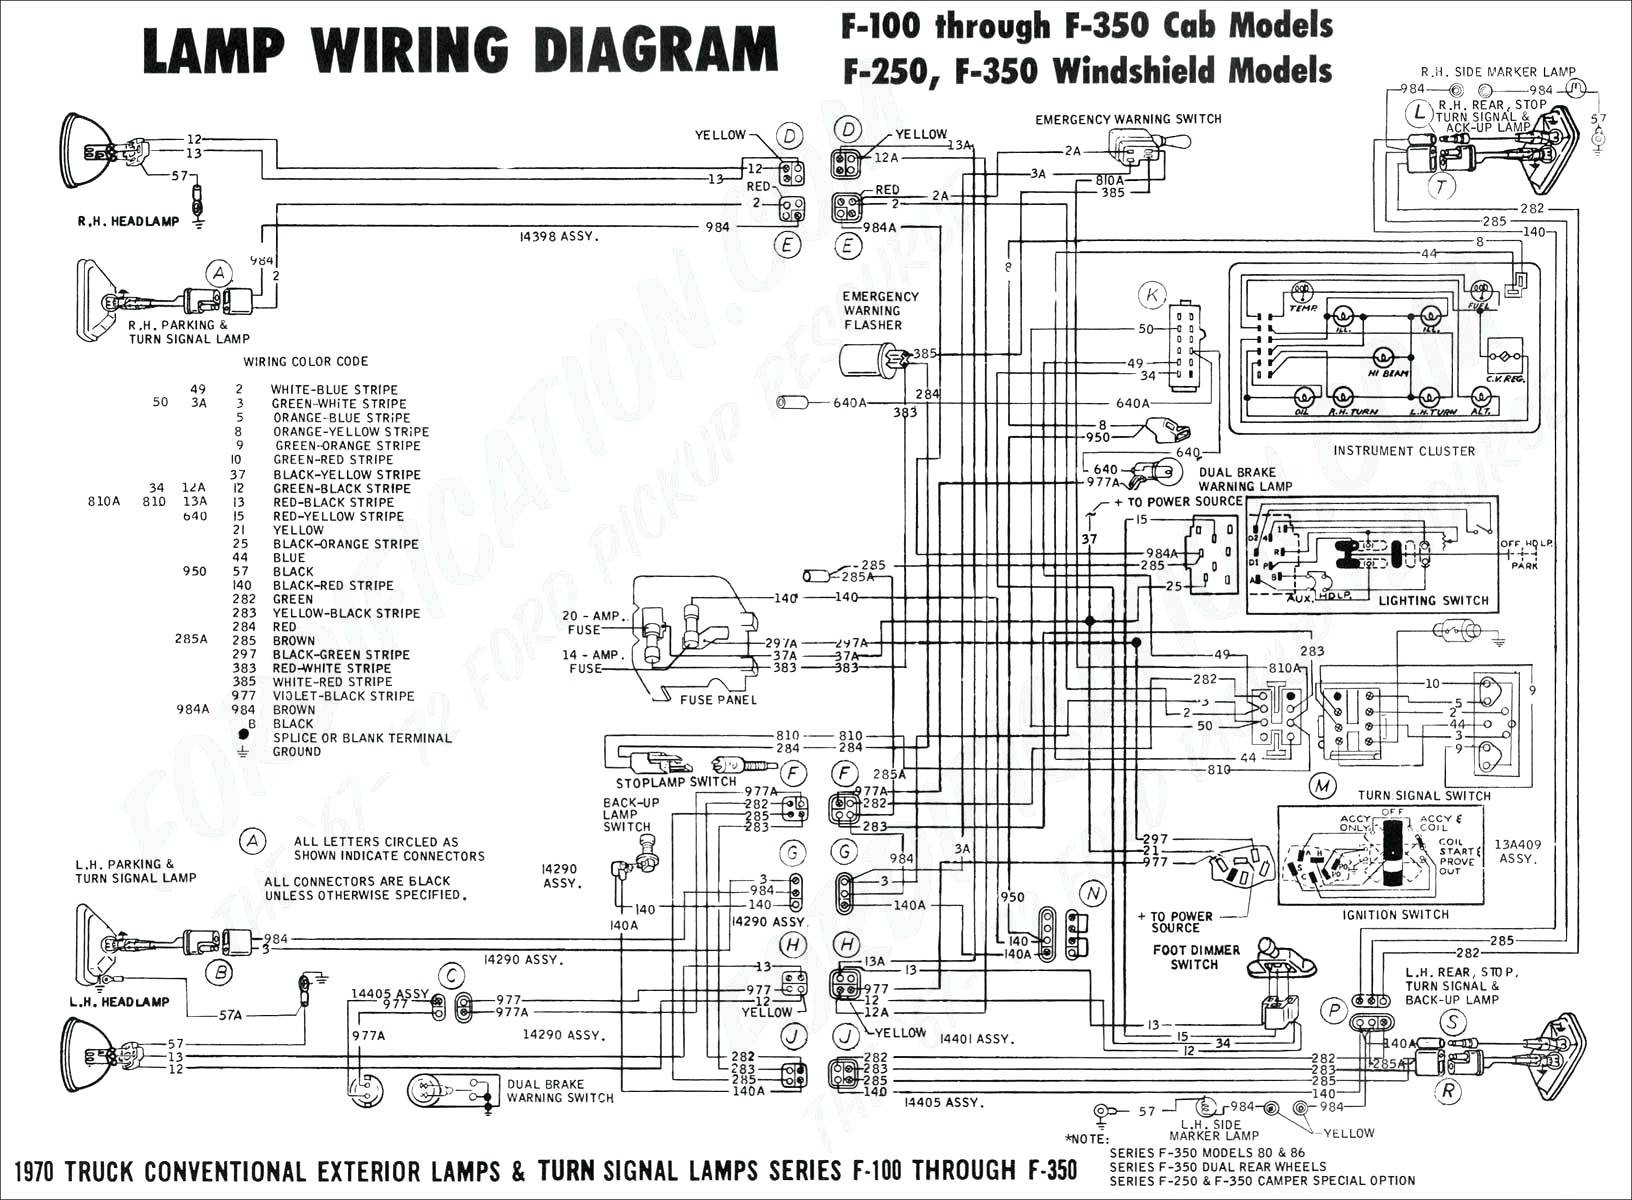 2002 Pontiac Grand Am Engine Diagram Wiring Diagram for 1995 Pontiac Bonneville Wiring Schematics Diagram Of 2002 Pontiac Grand Am Engine Diagram